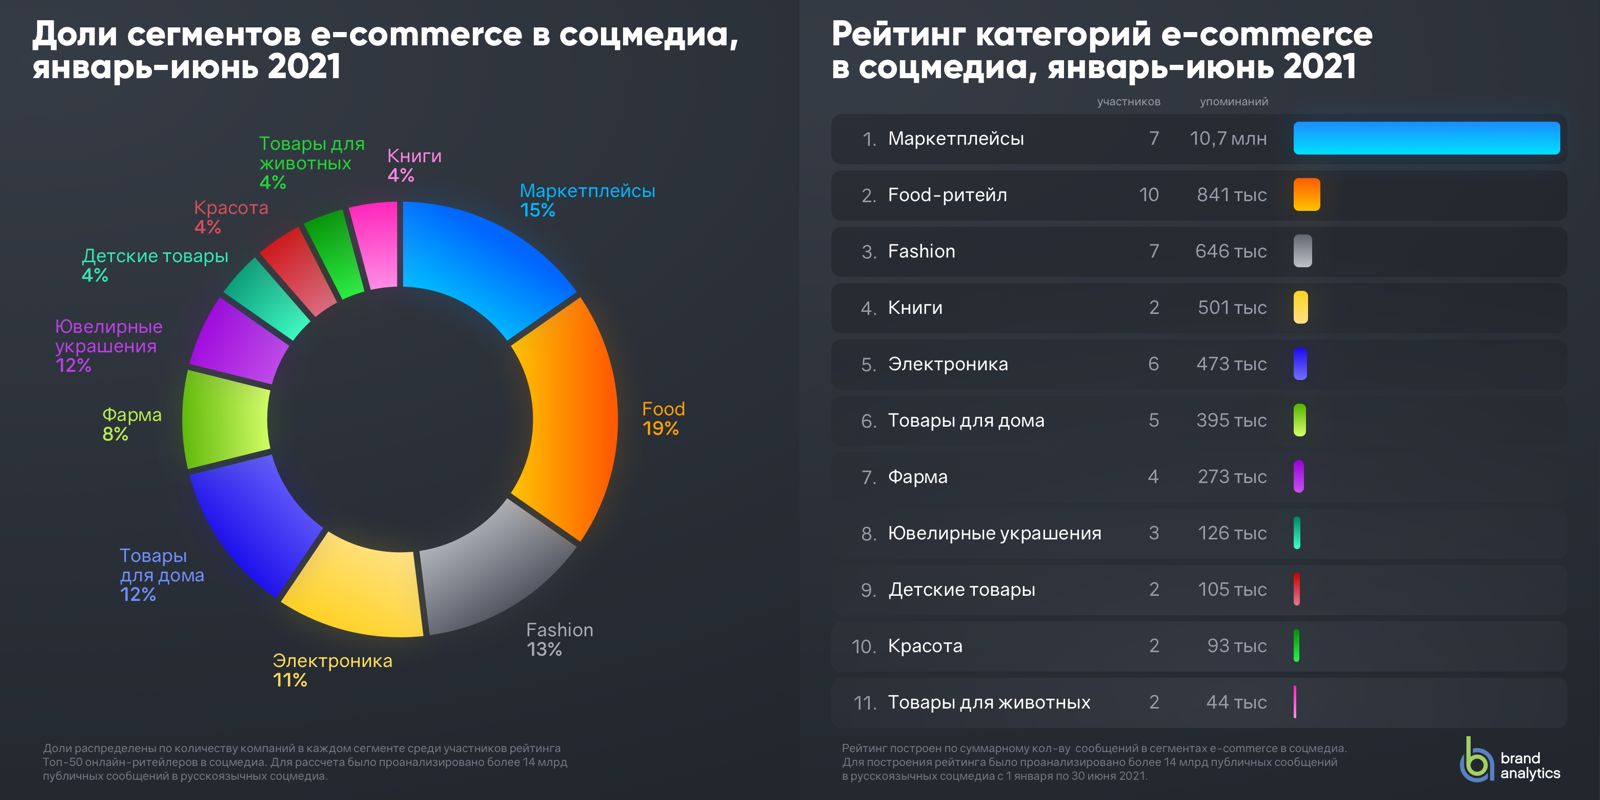 Мониторинг соцсетей сегменты российского e-commerce